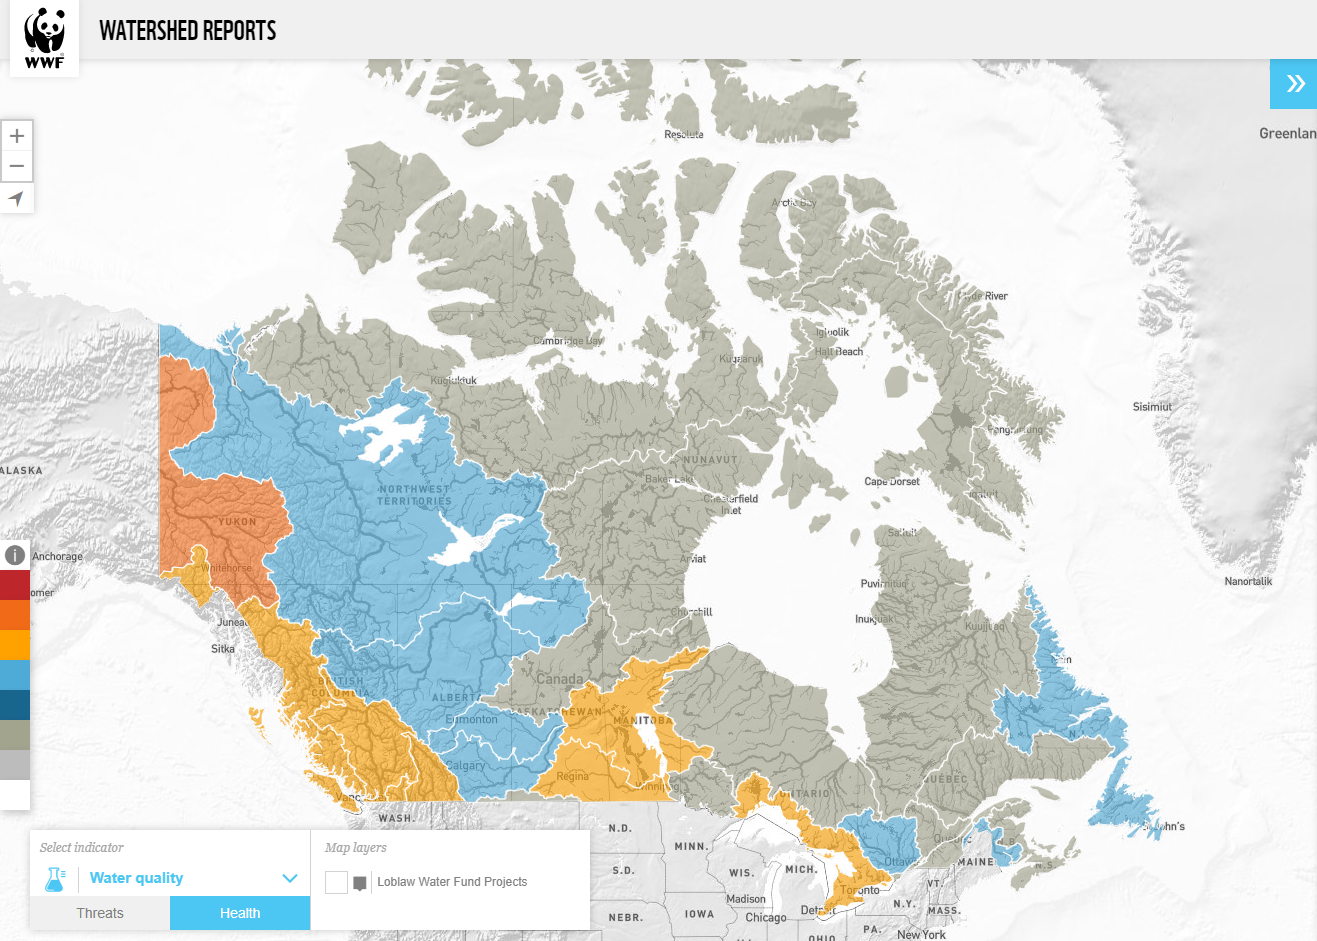 Une carte de la qualité de l'eau au Canada tirée des rapports sur les bassins versants du WWF-Canada.